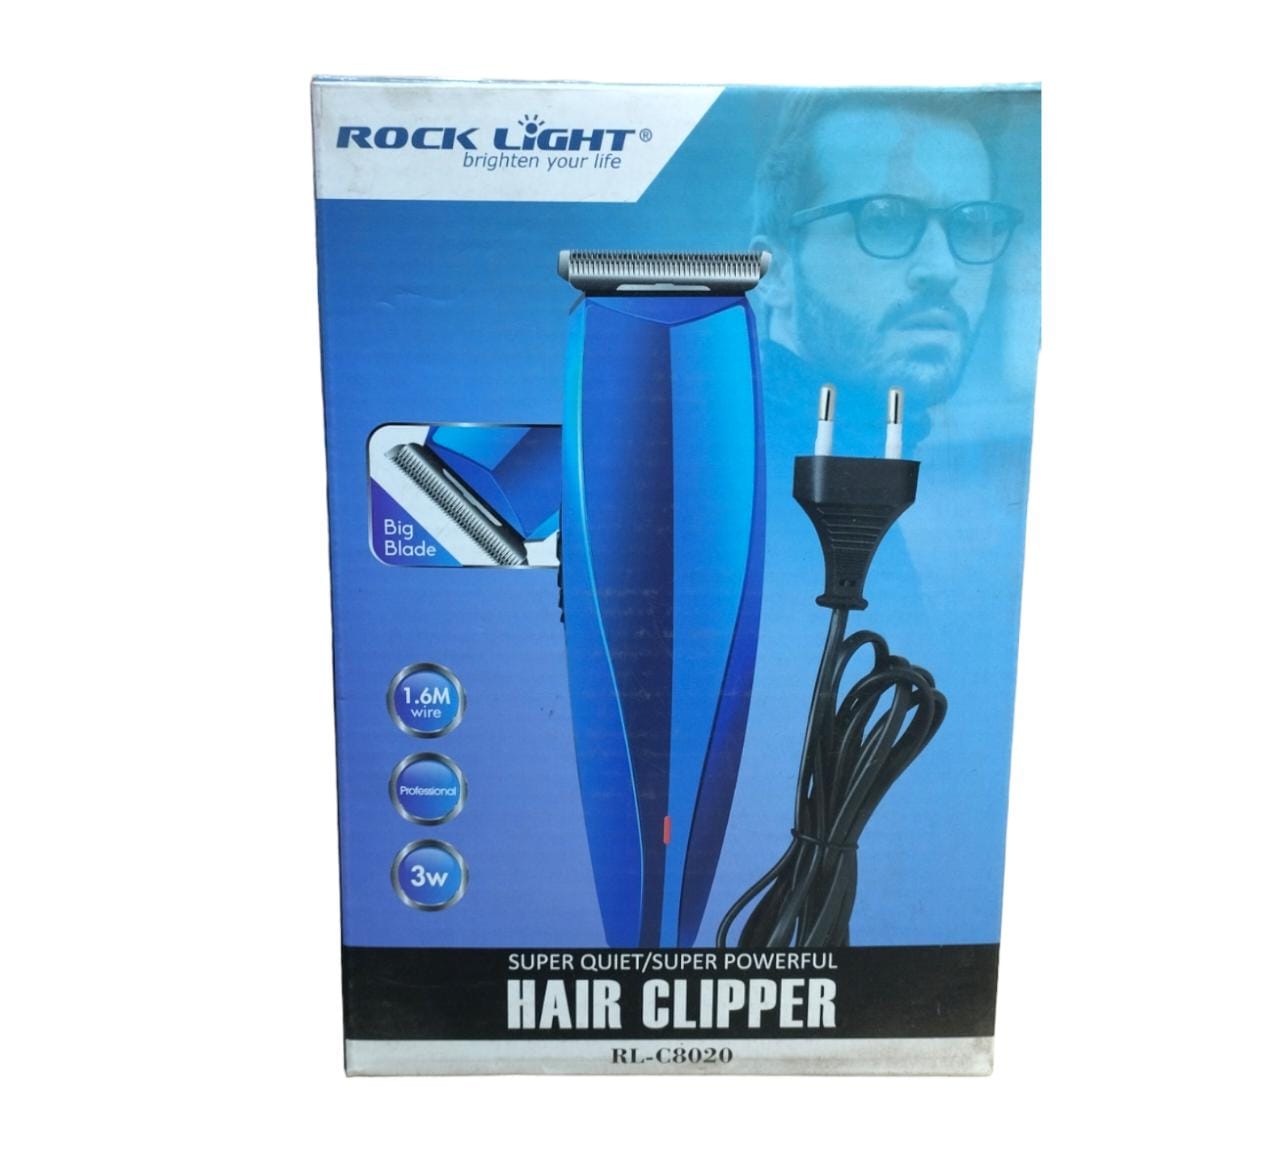 Rock light hair clipper 